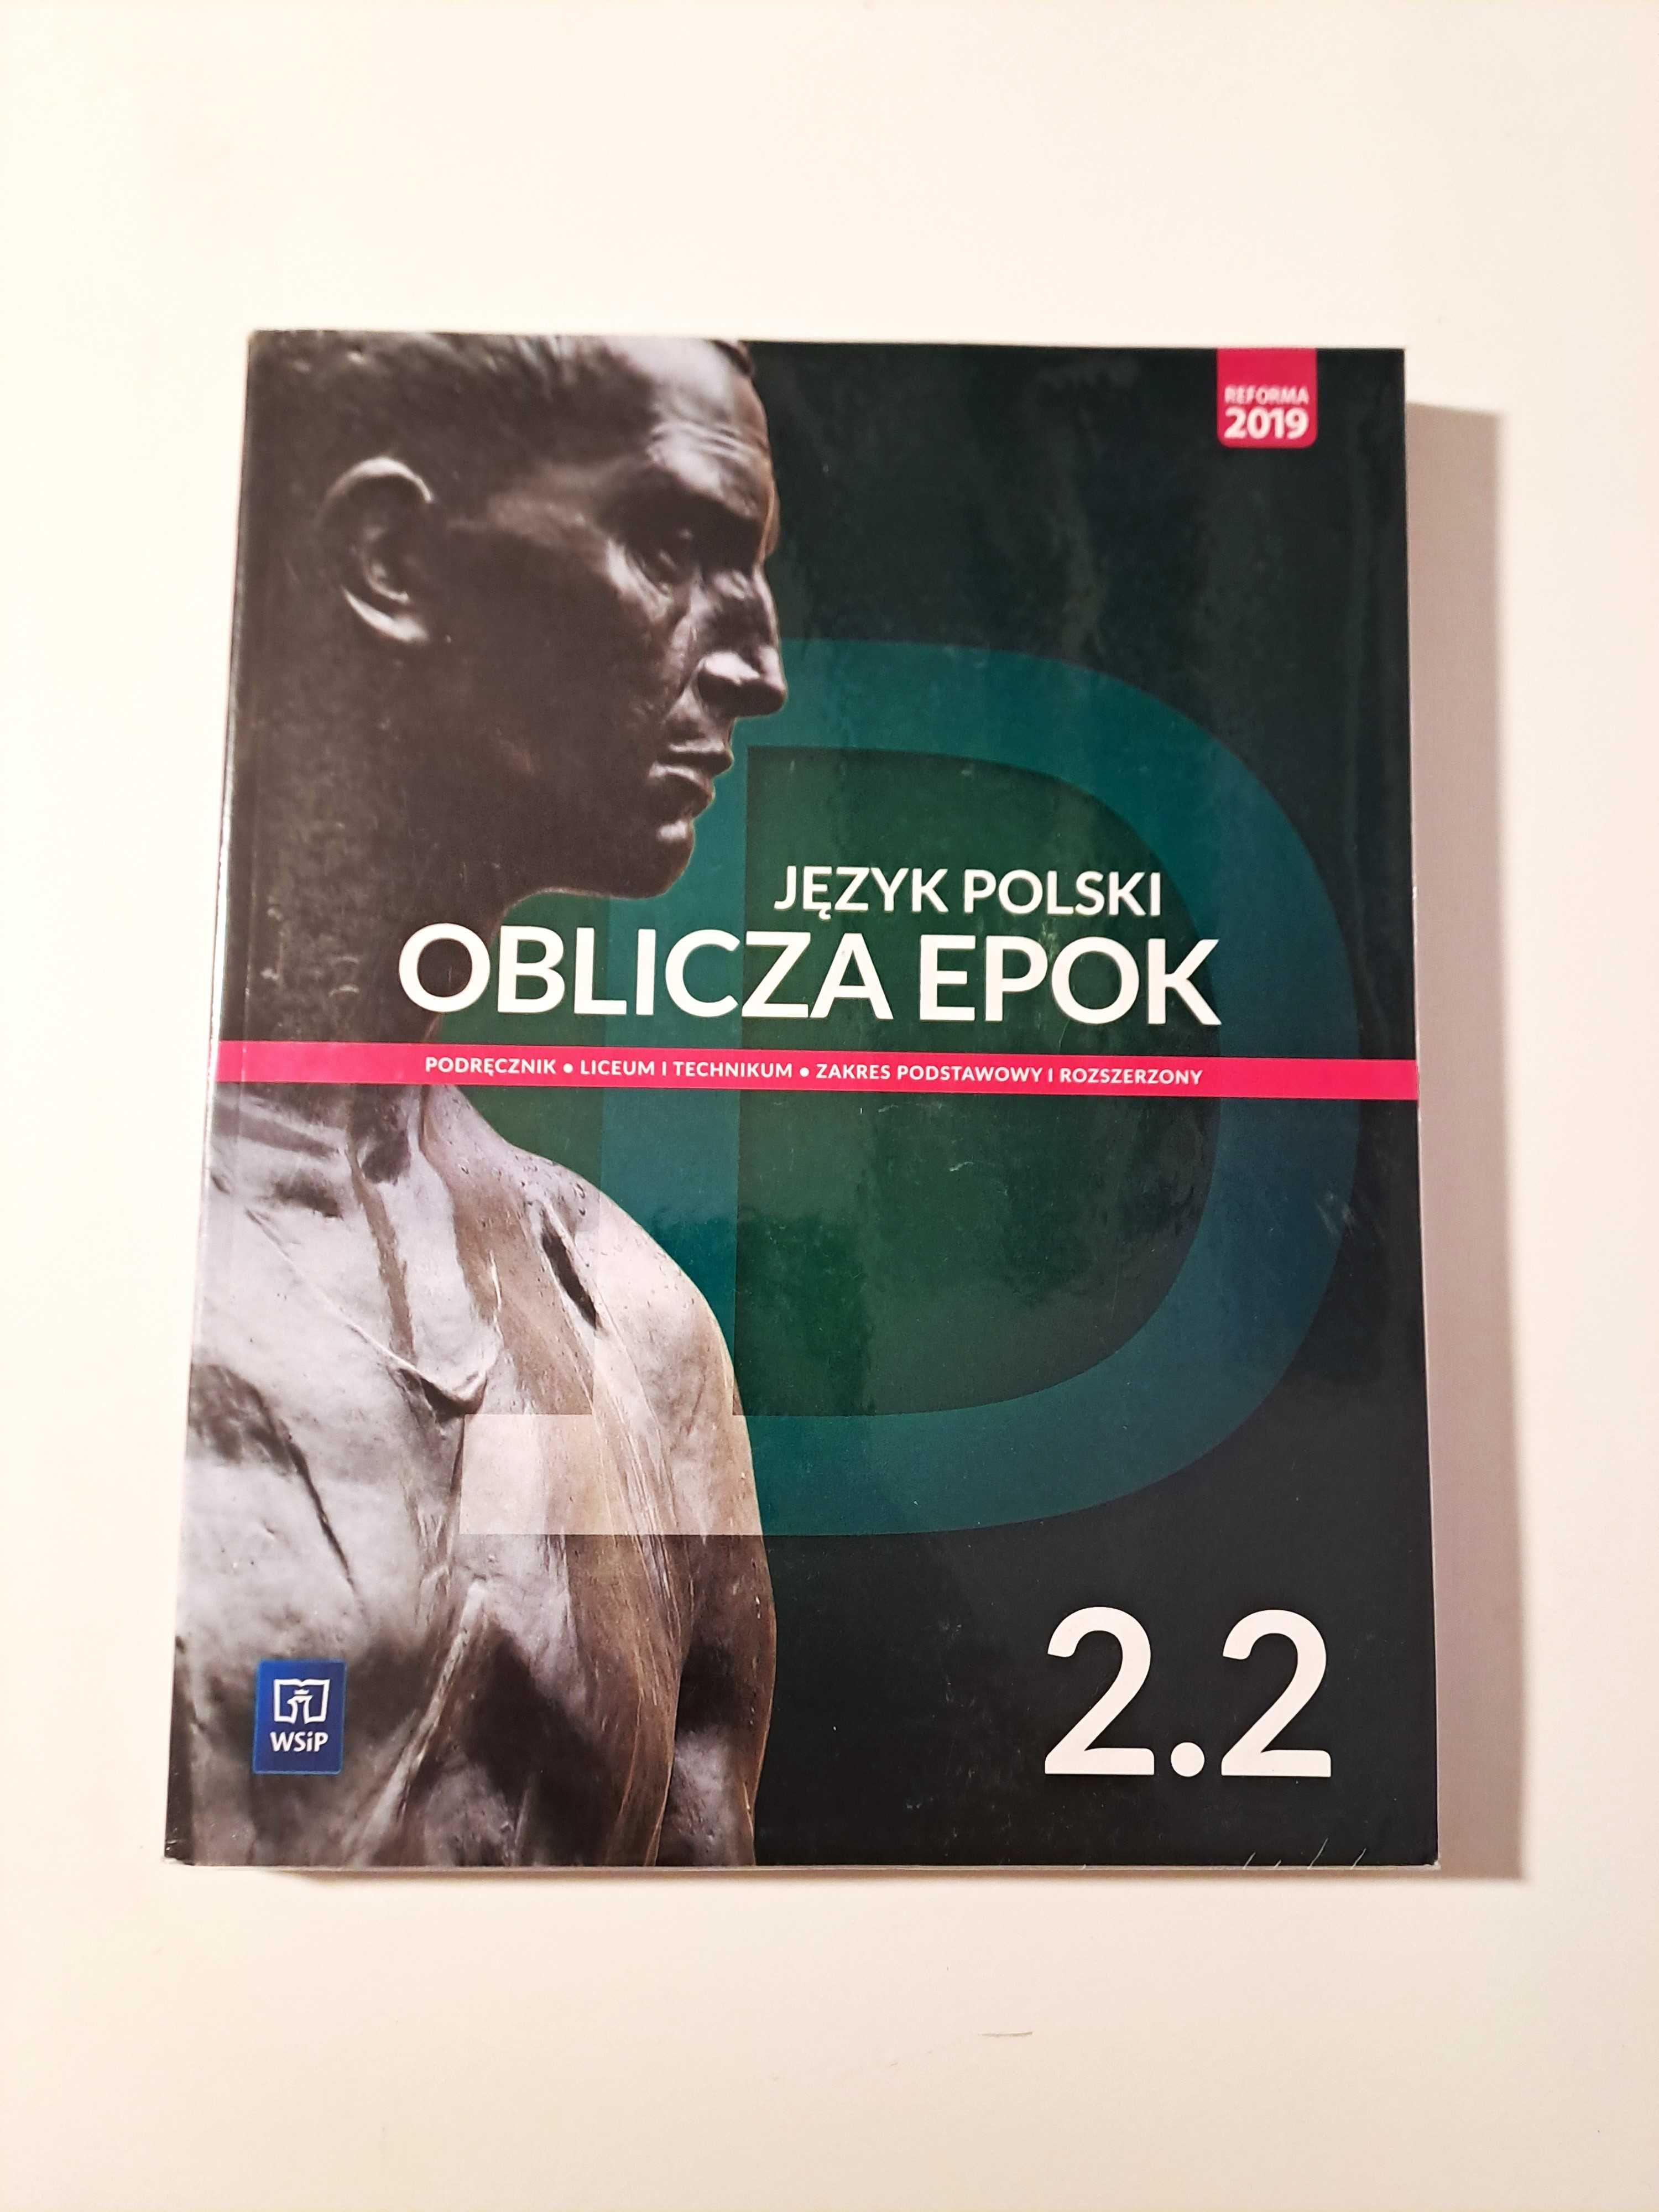 Podręcznik Język Polski Oblicza epok 2.2